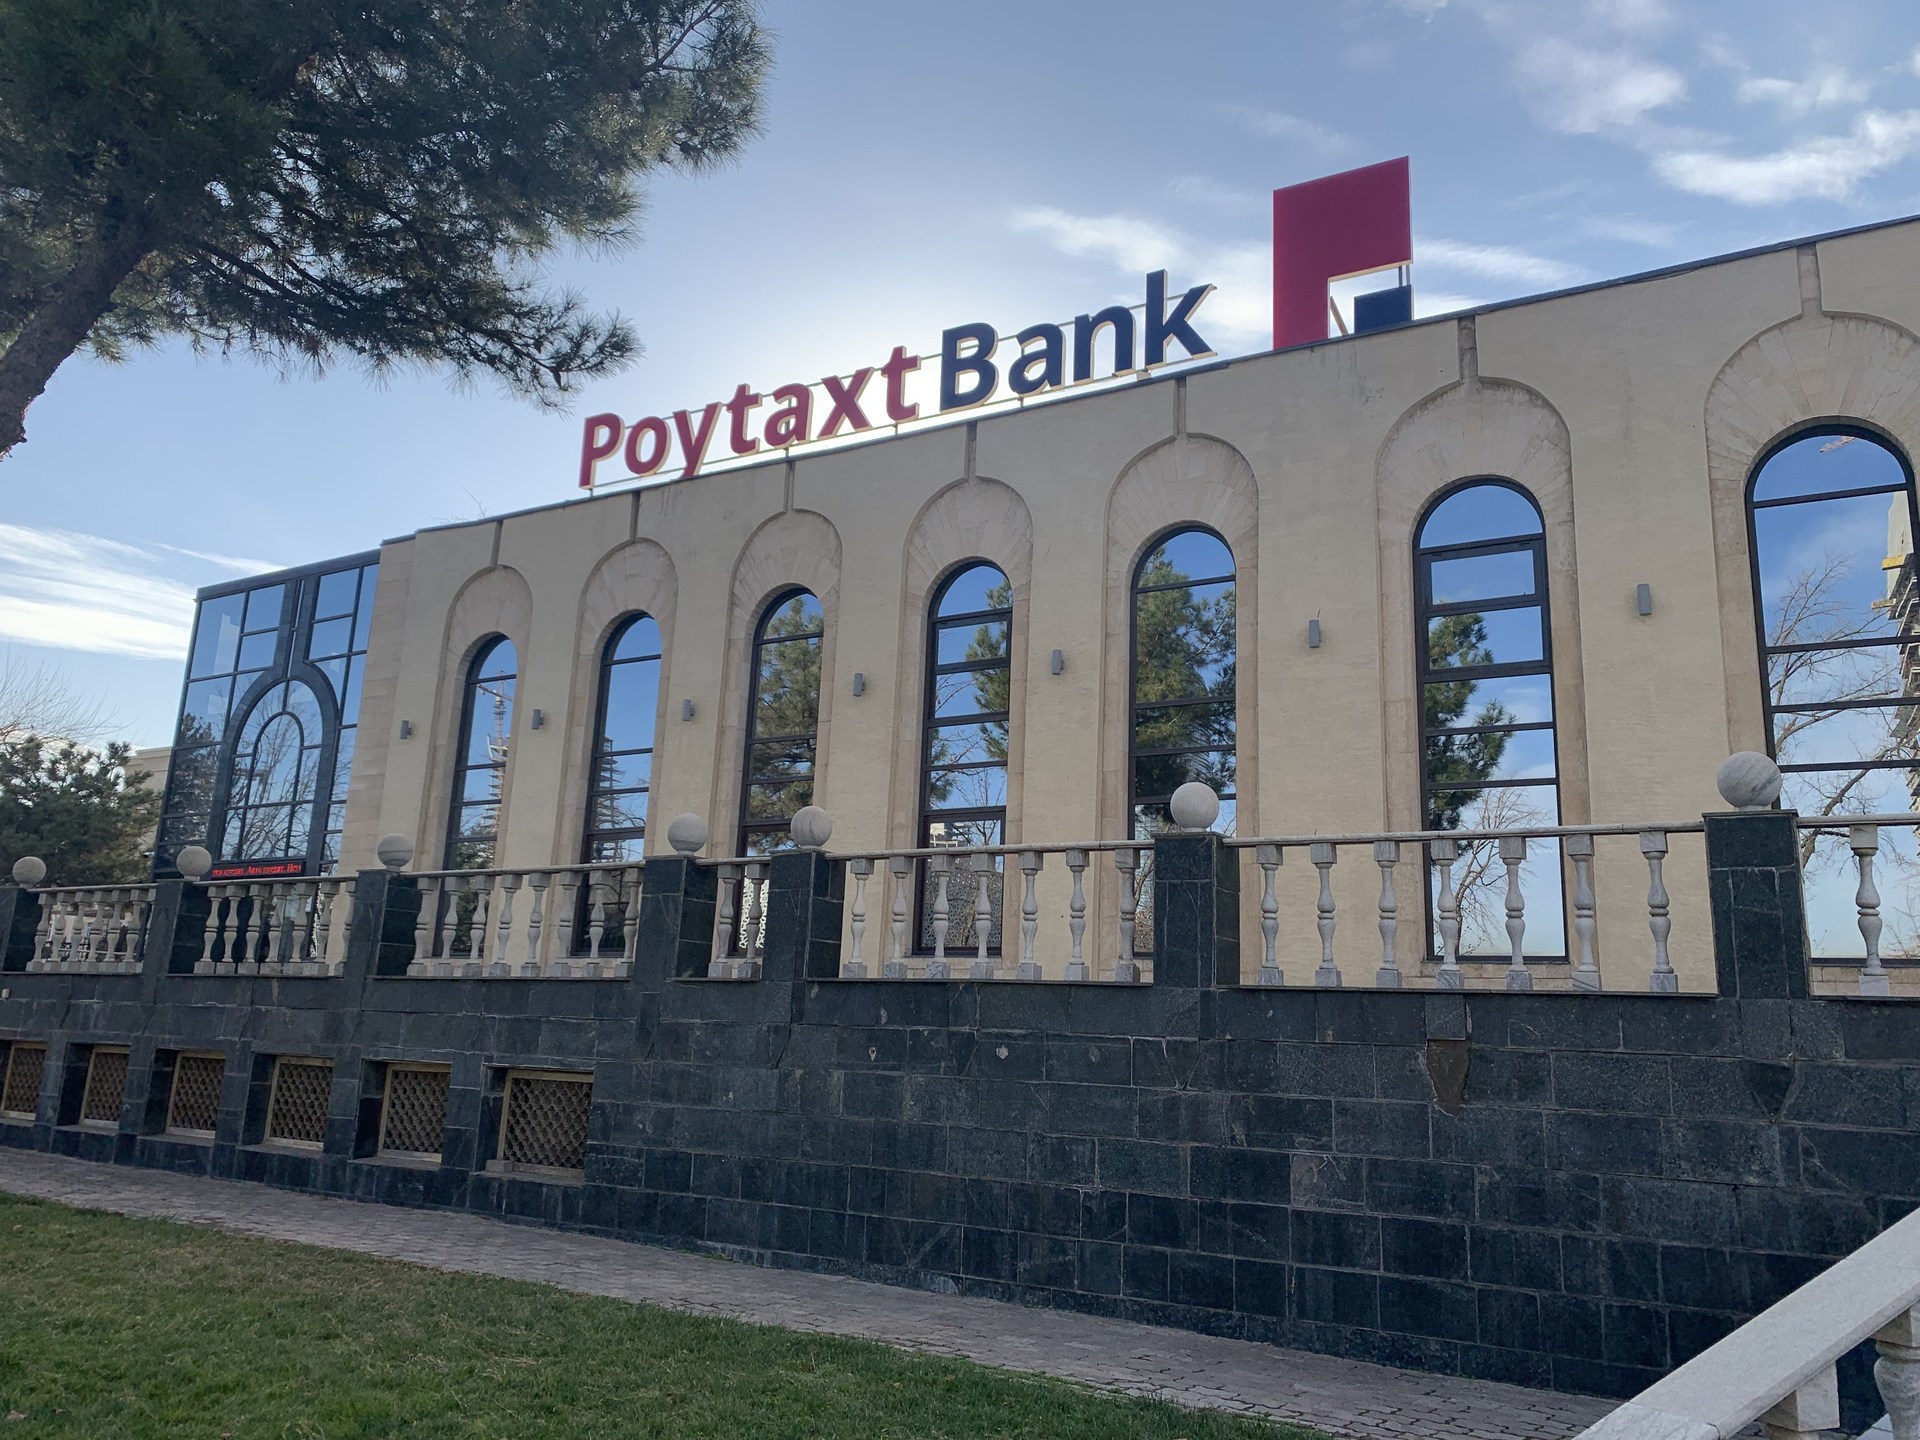 Poytaxtbank